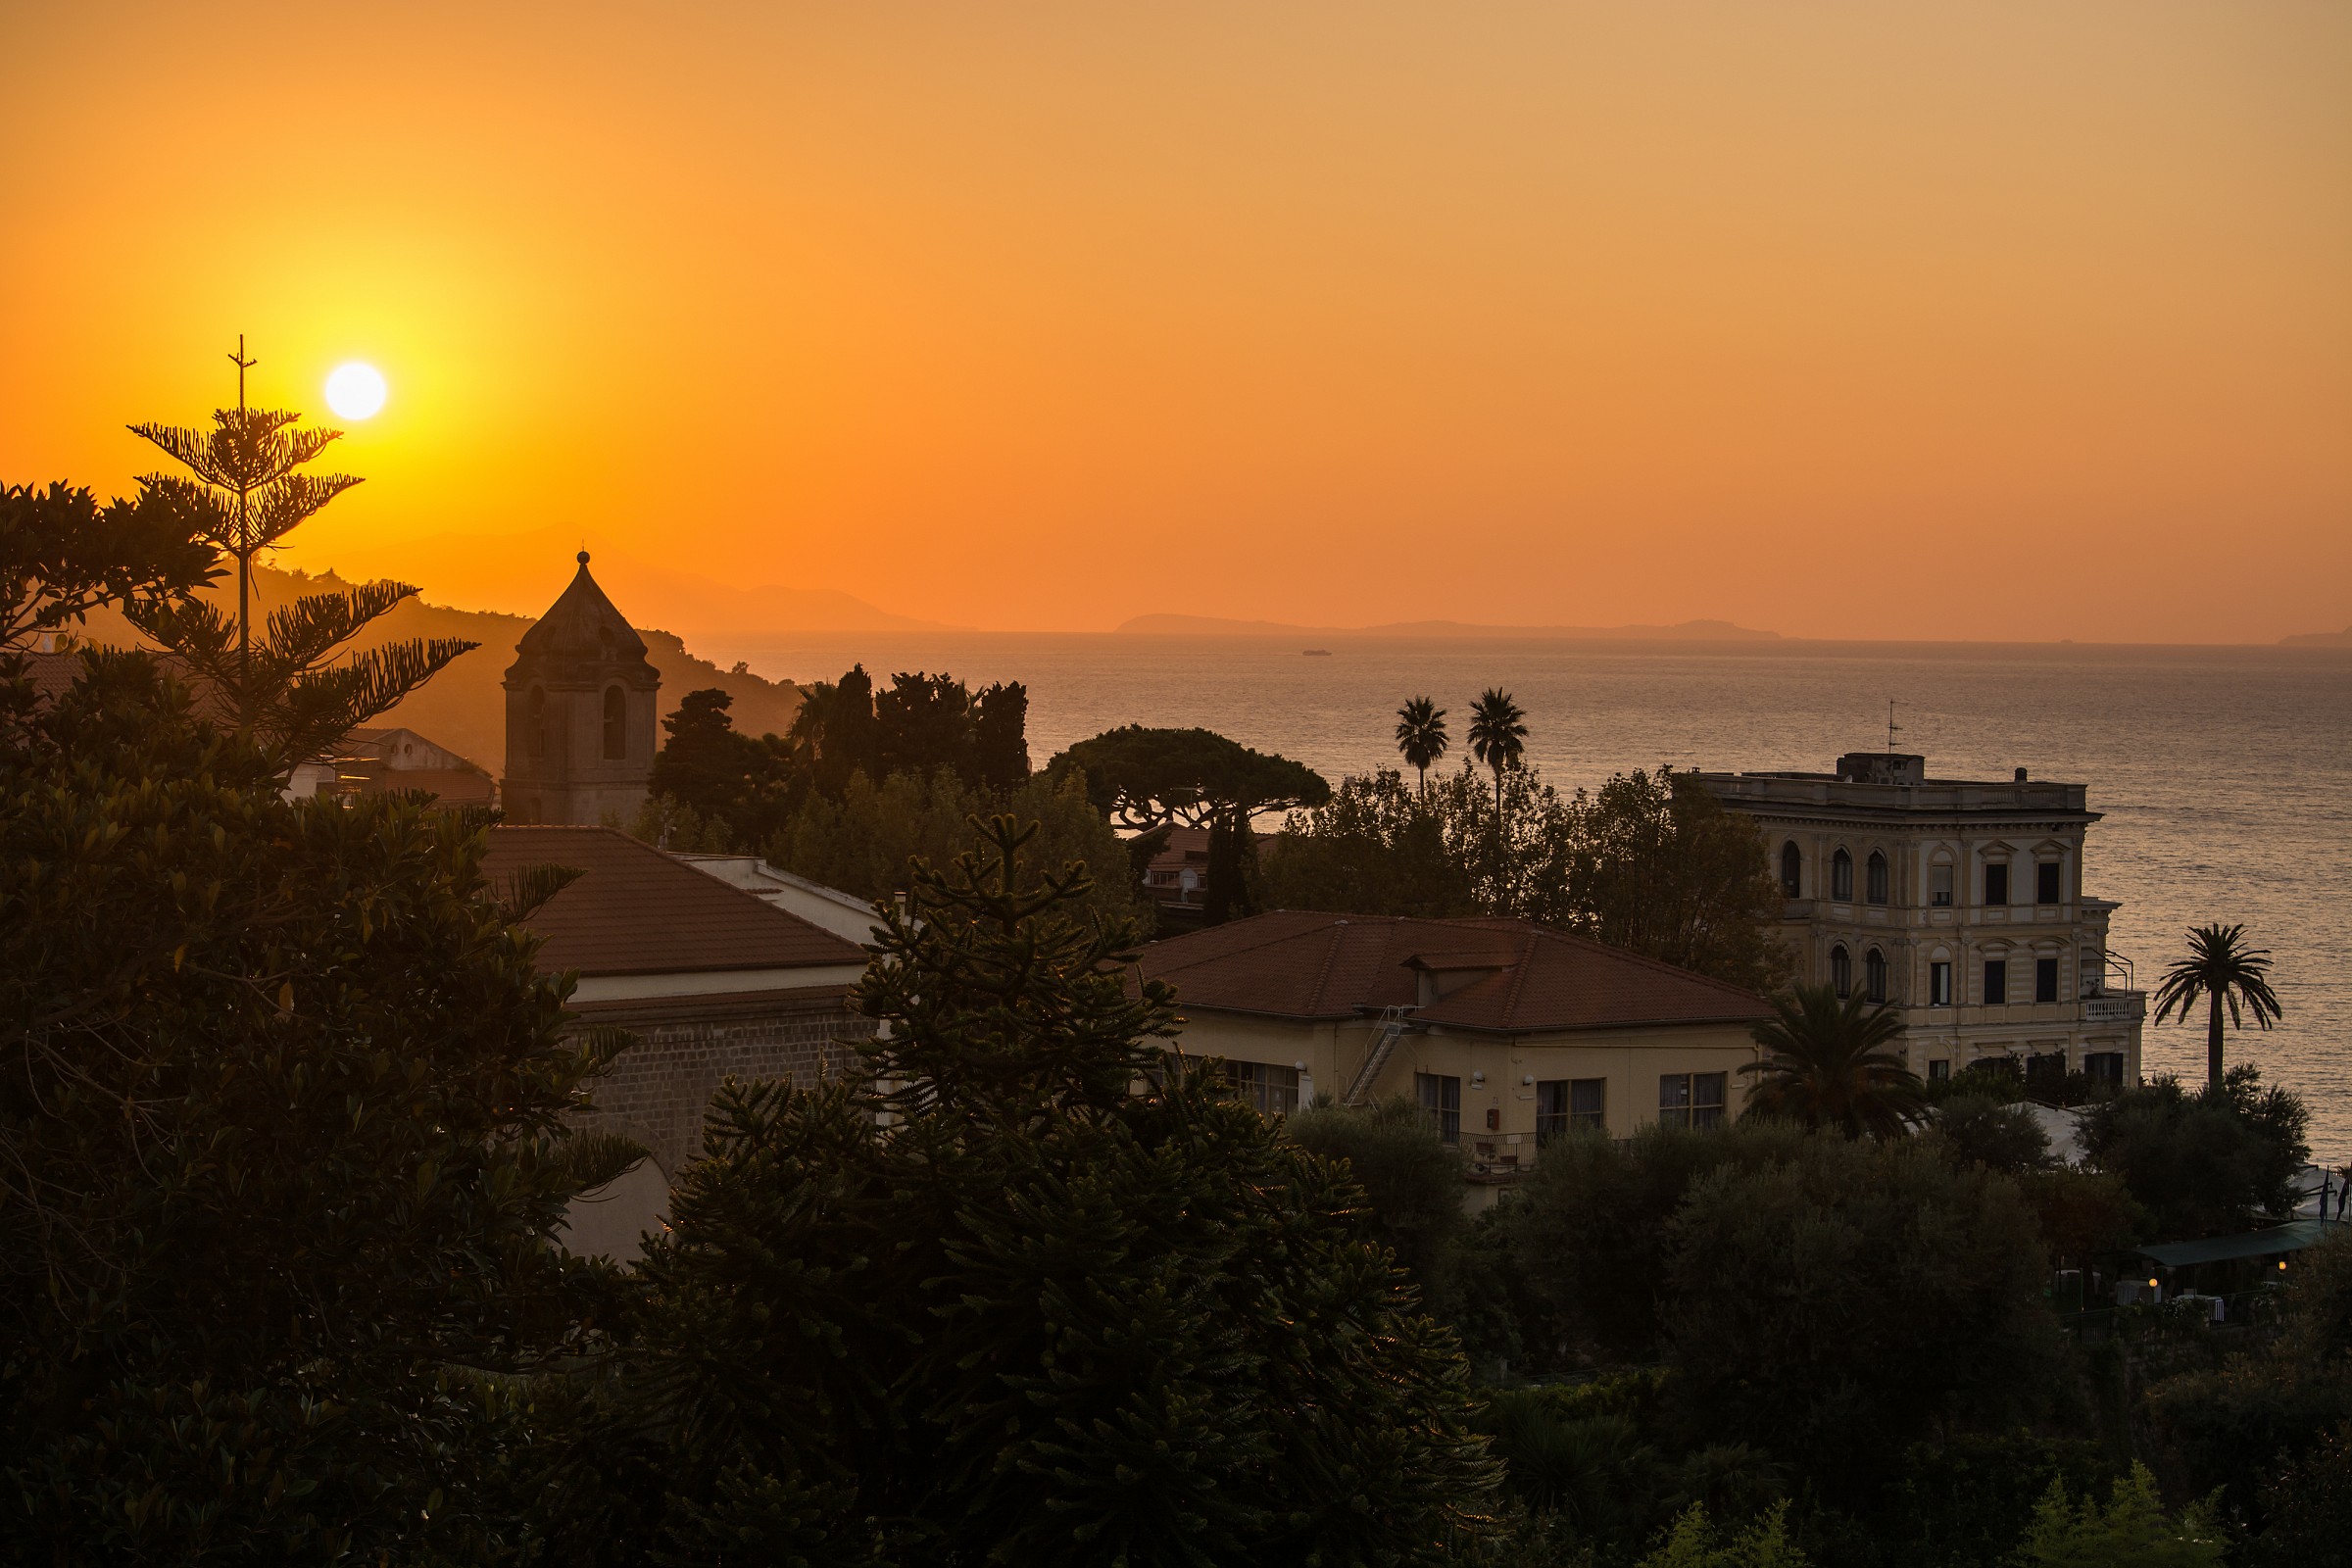 Sunset Sorrento - A dream...